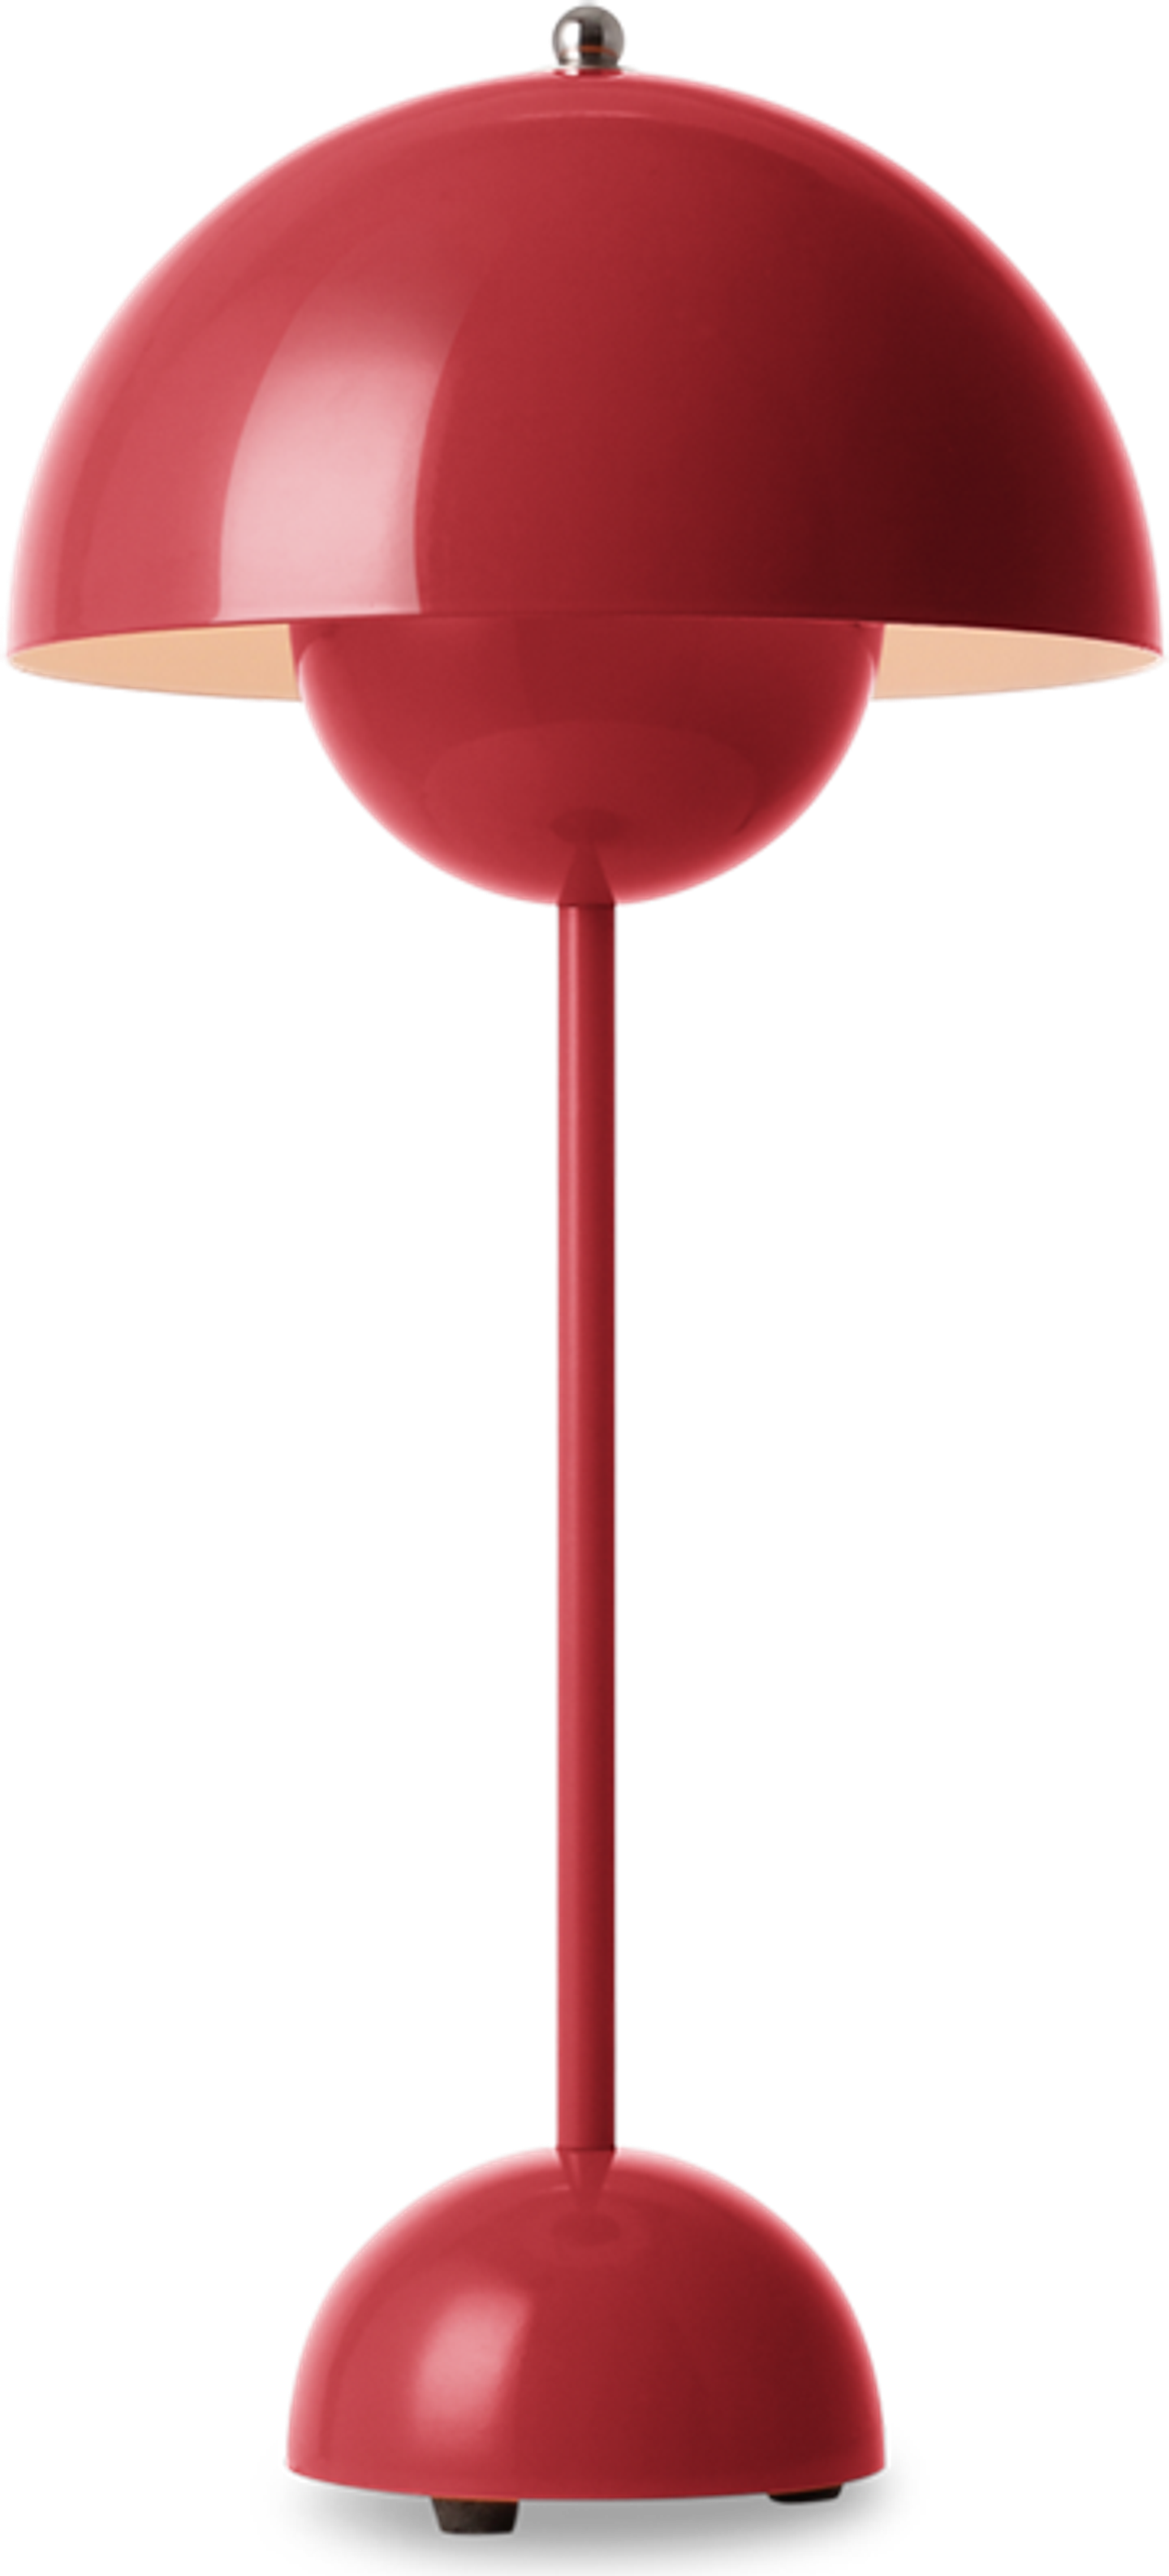 Lampada da tavolo in stile vaso di fiori Red image.